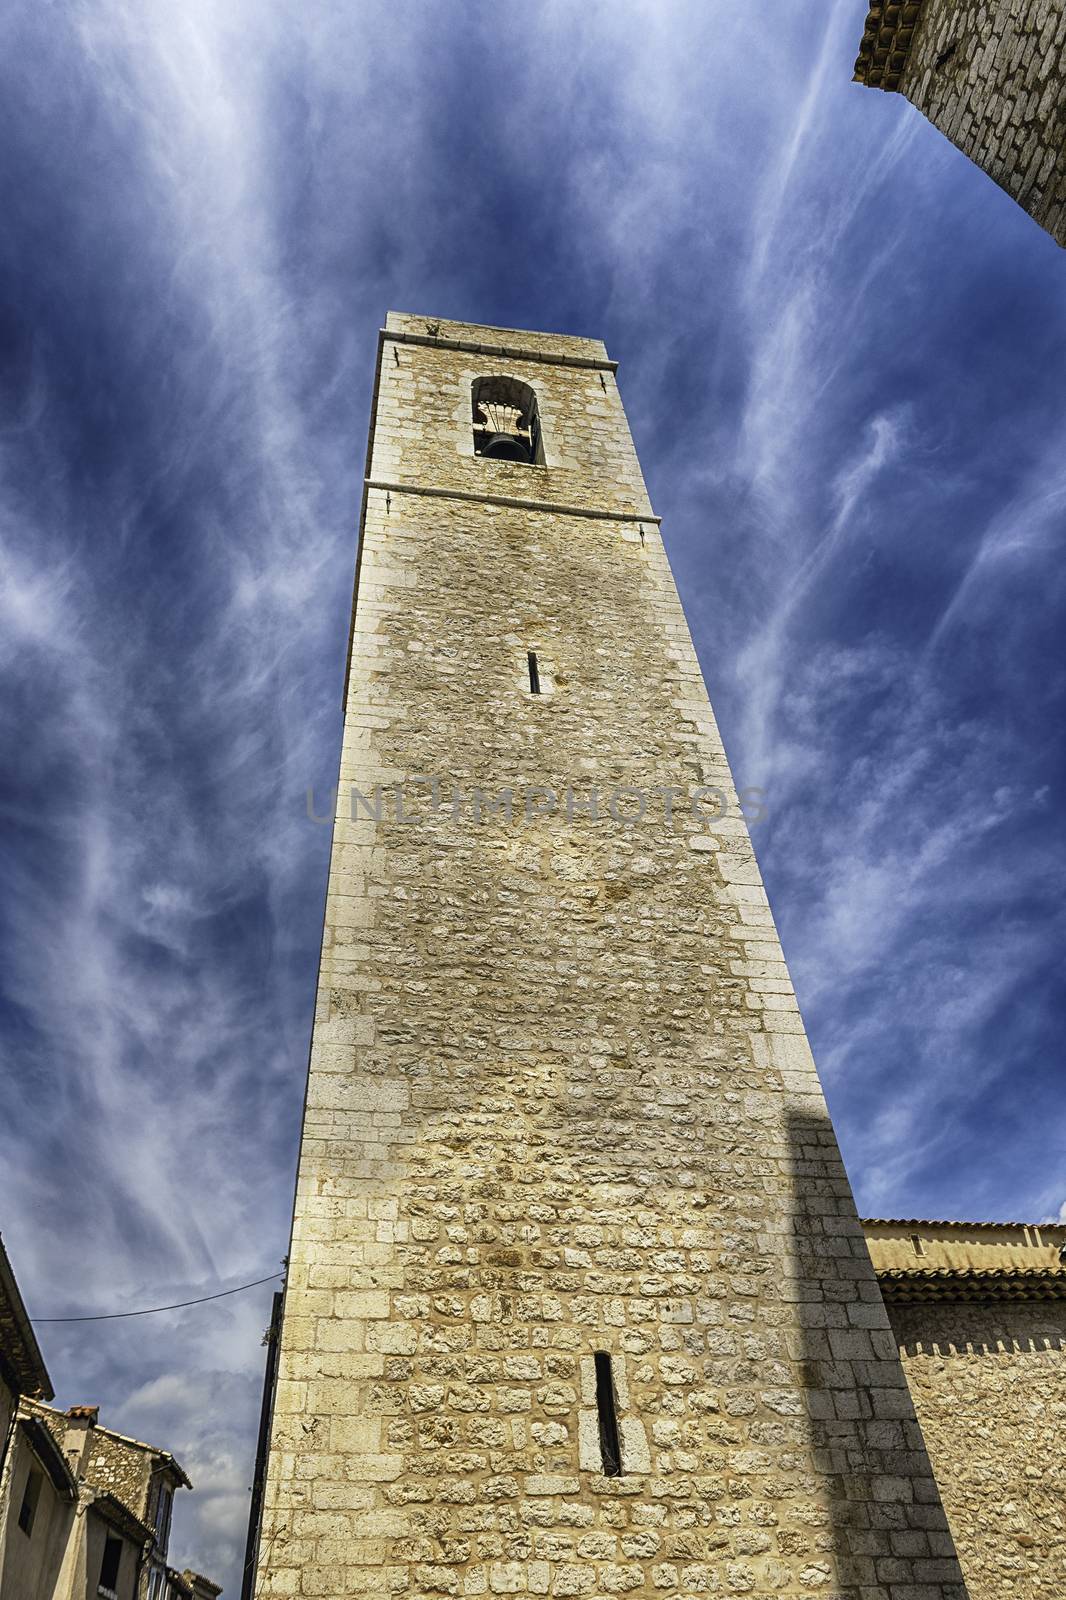 Picturesque medieval tower in Saint-Paul-de-Vence, Cote d'Azur,  by marcorubino